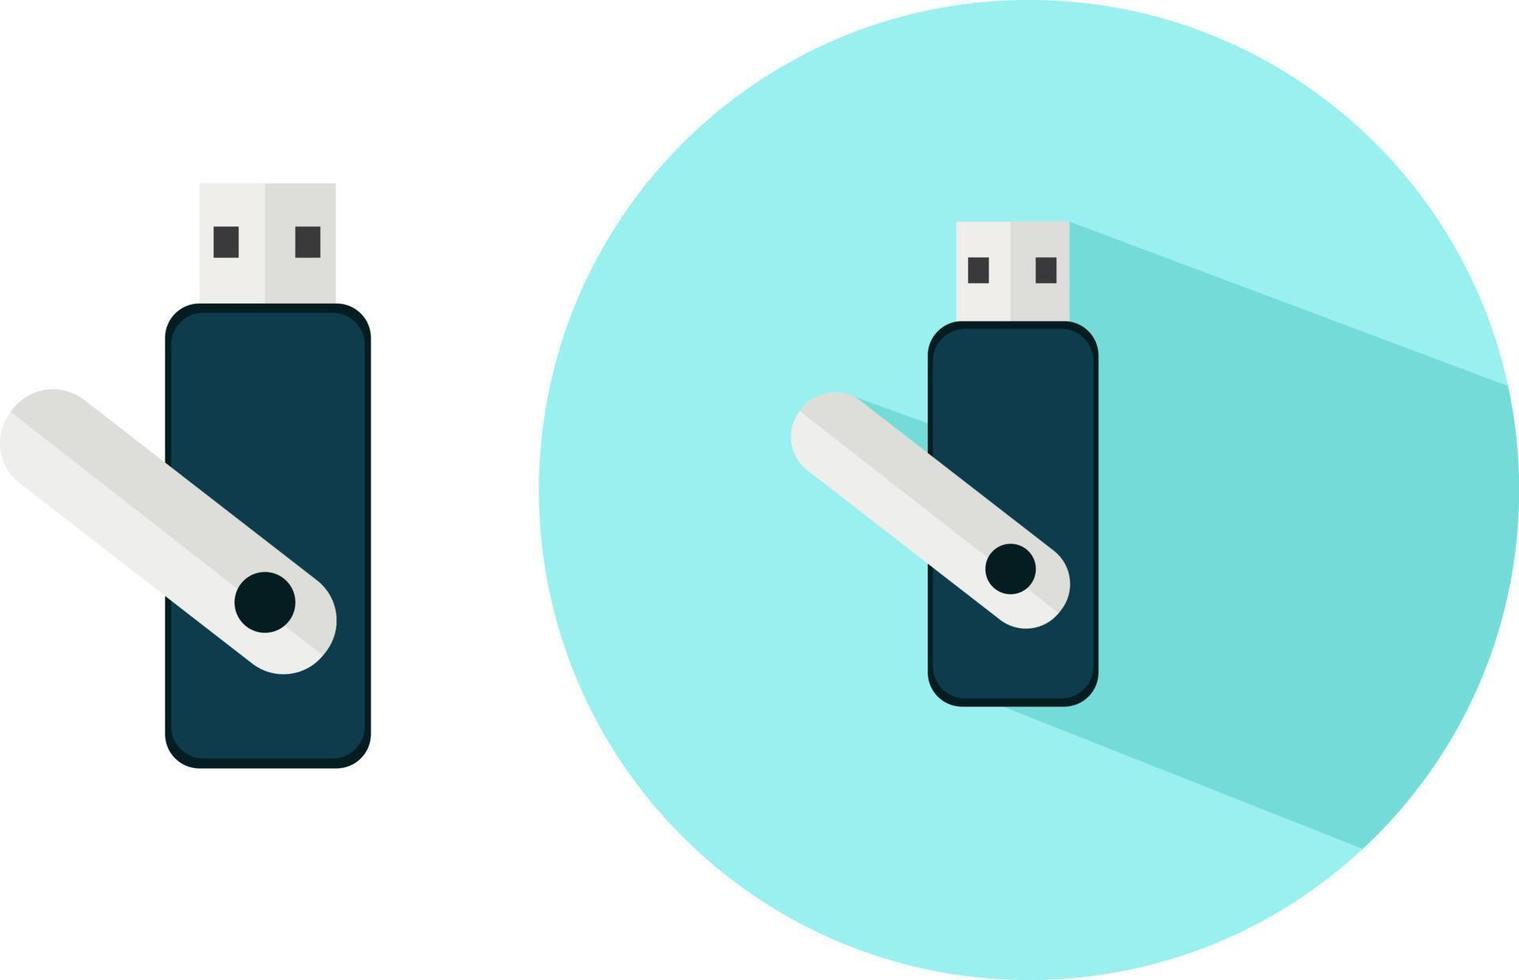 USB azul, ilustración, vector sobre fondo blanco.